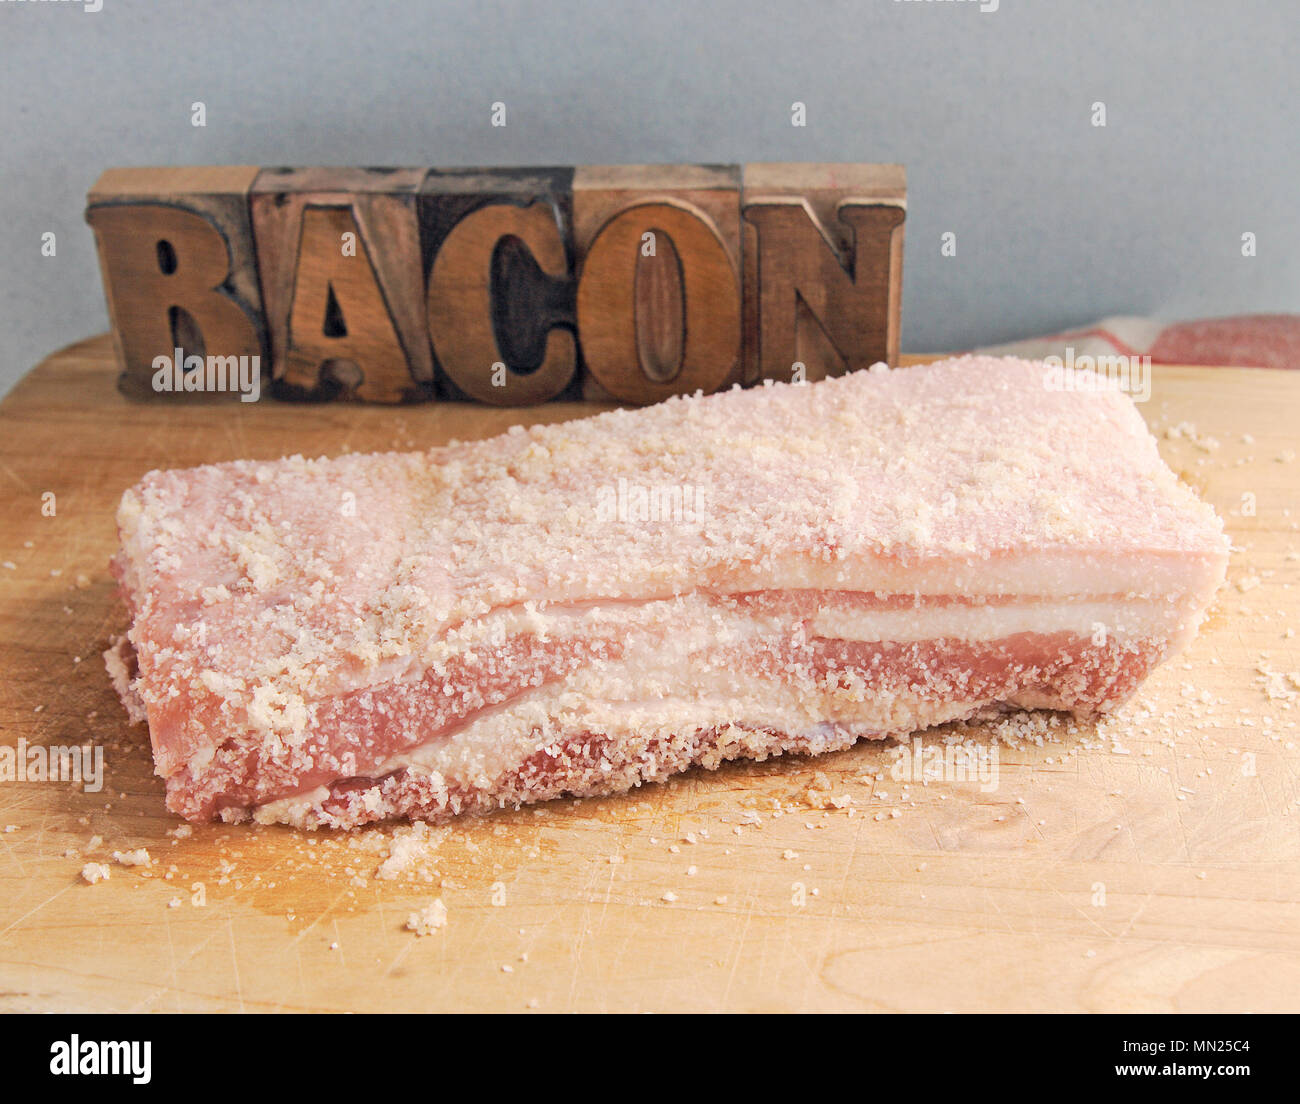 Un morceau de poitrine de porc salée avec le mot bacon en bois type et place pour le texte Banque D'Images